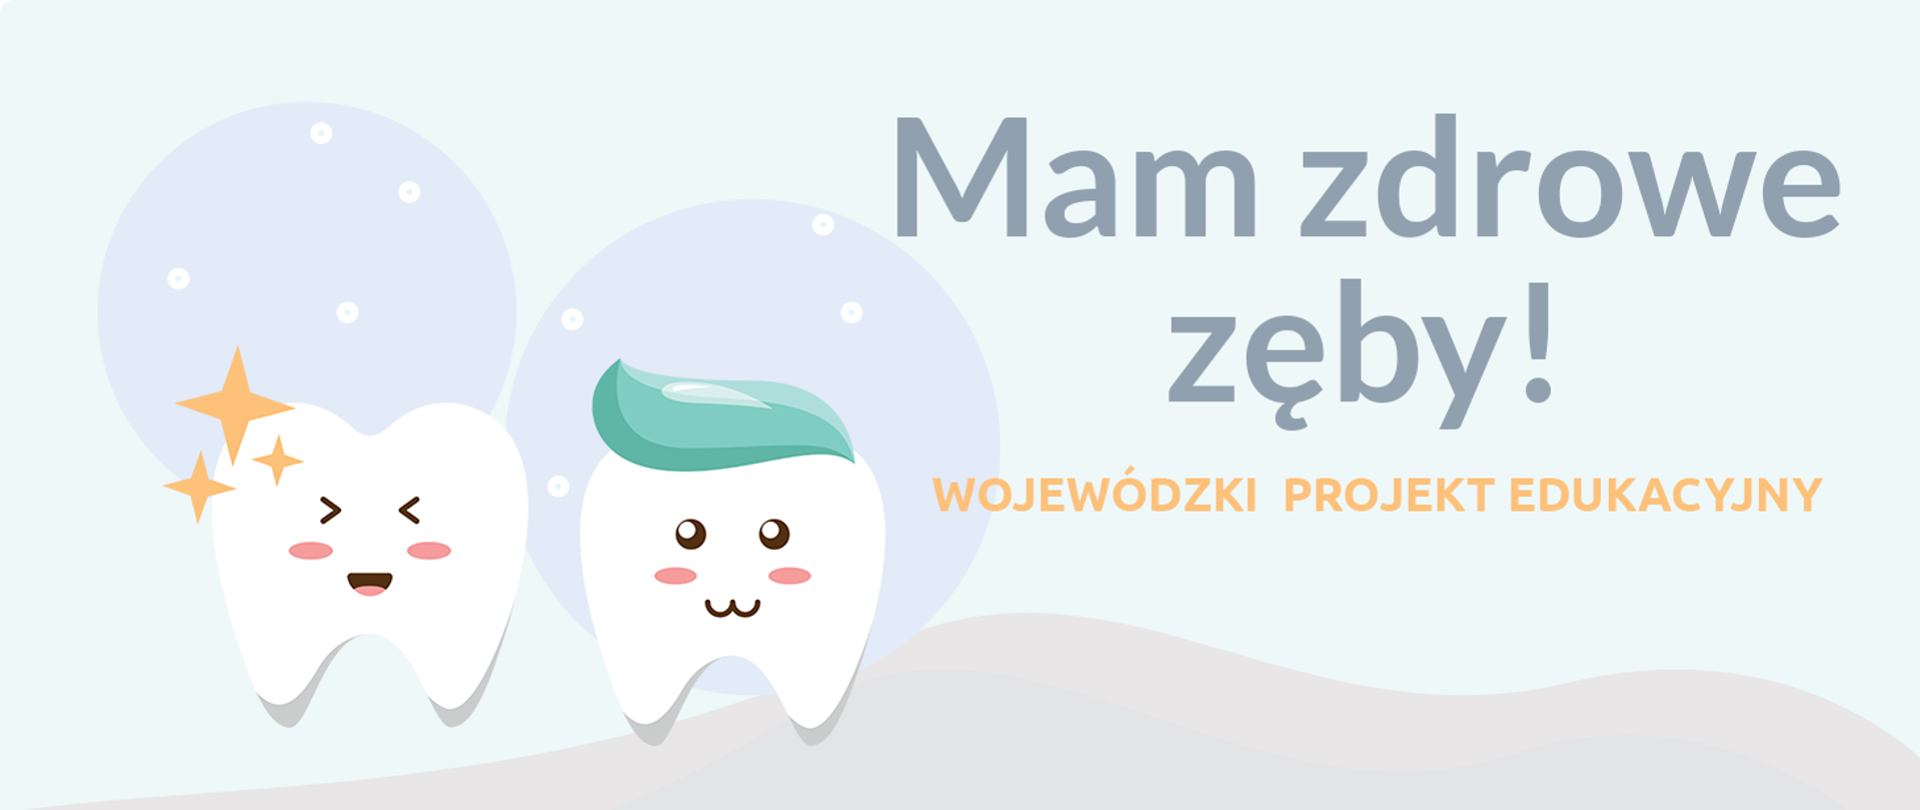 Baner "Mam zdrowe zęby" - Wojewódzki projekt edukacyjny